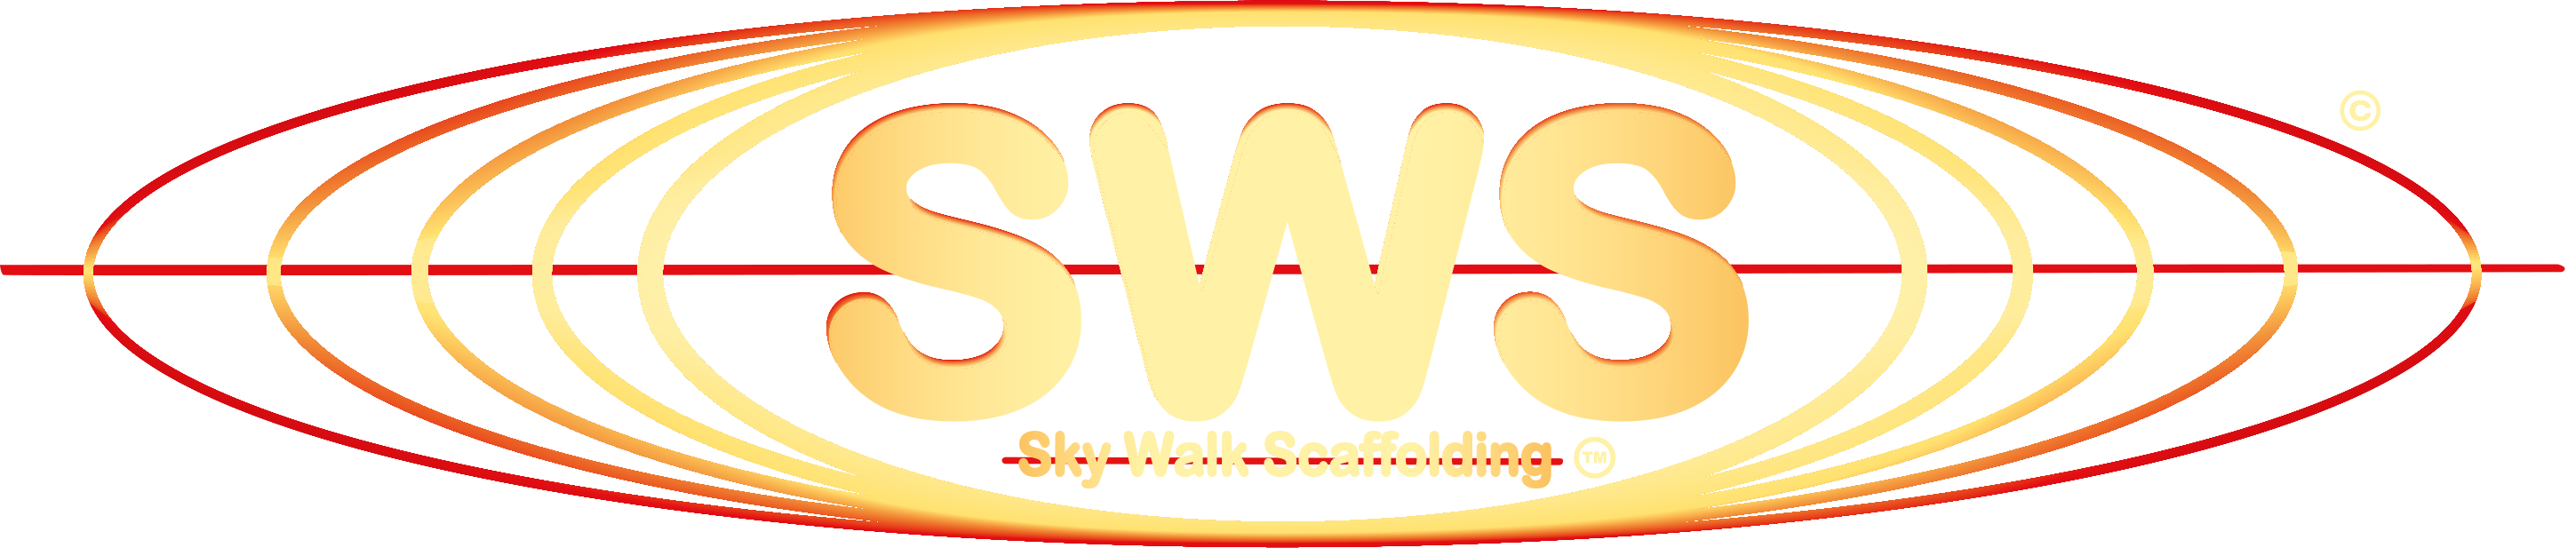 SWS